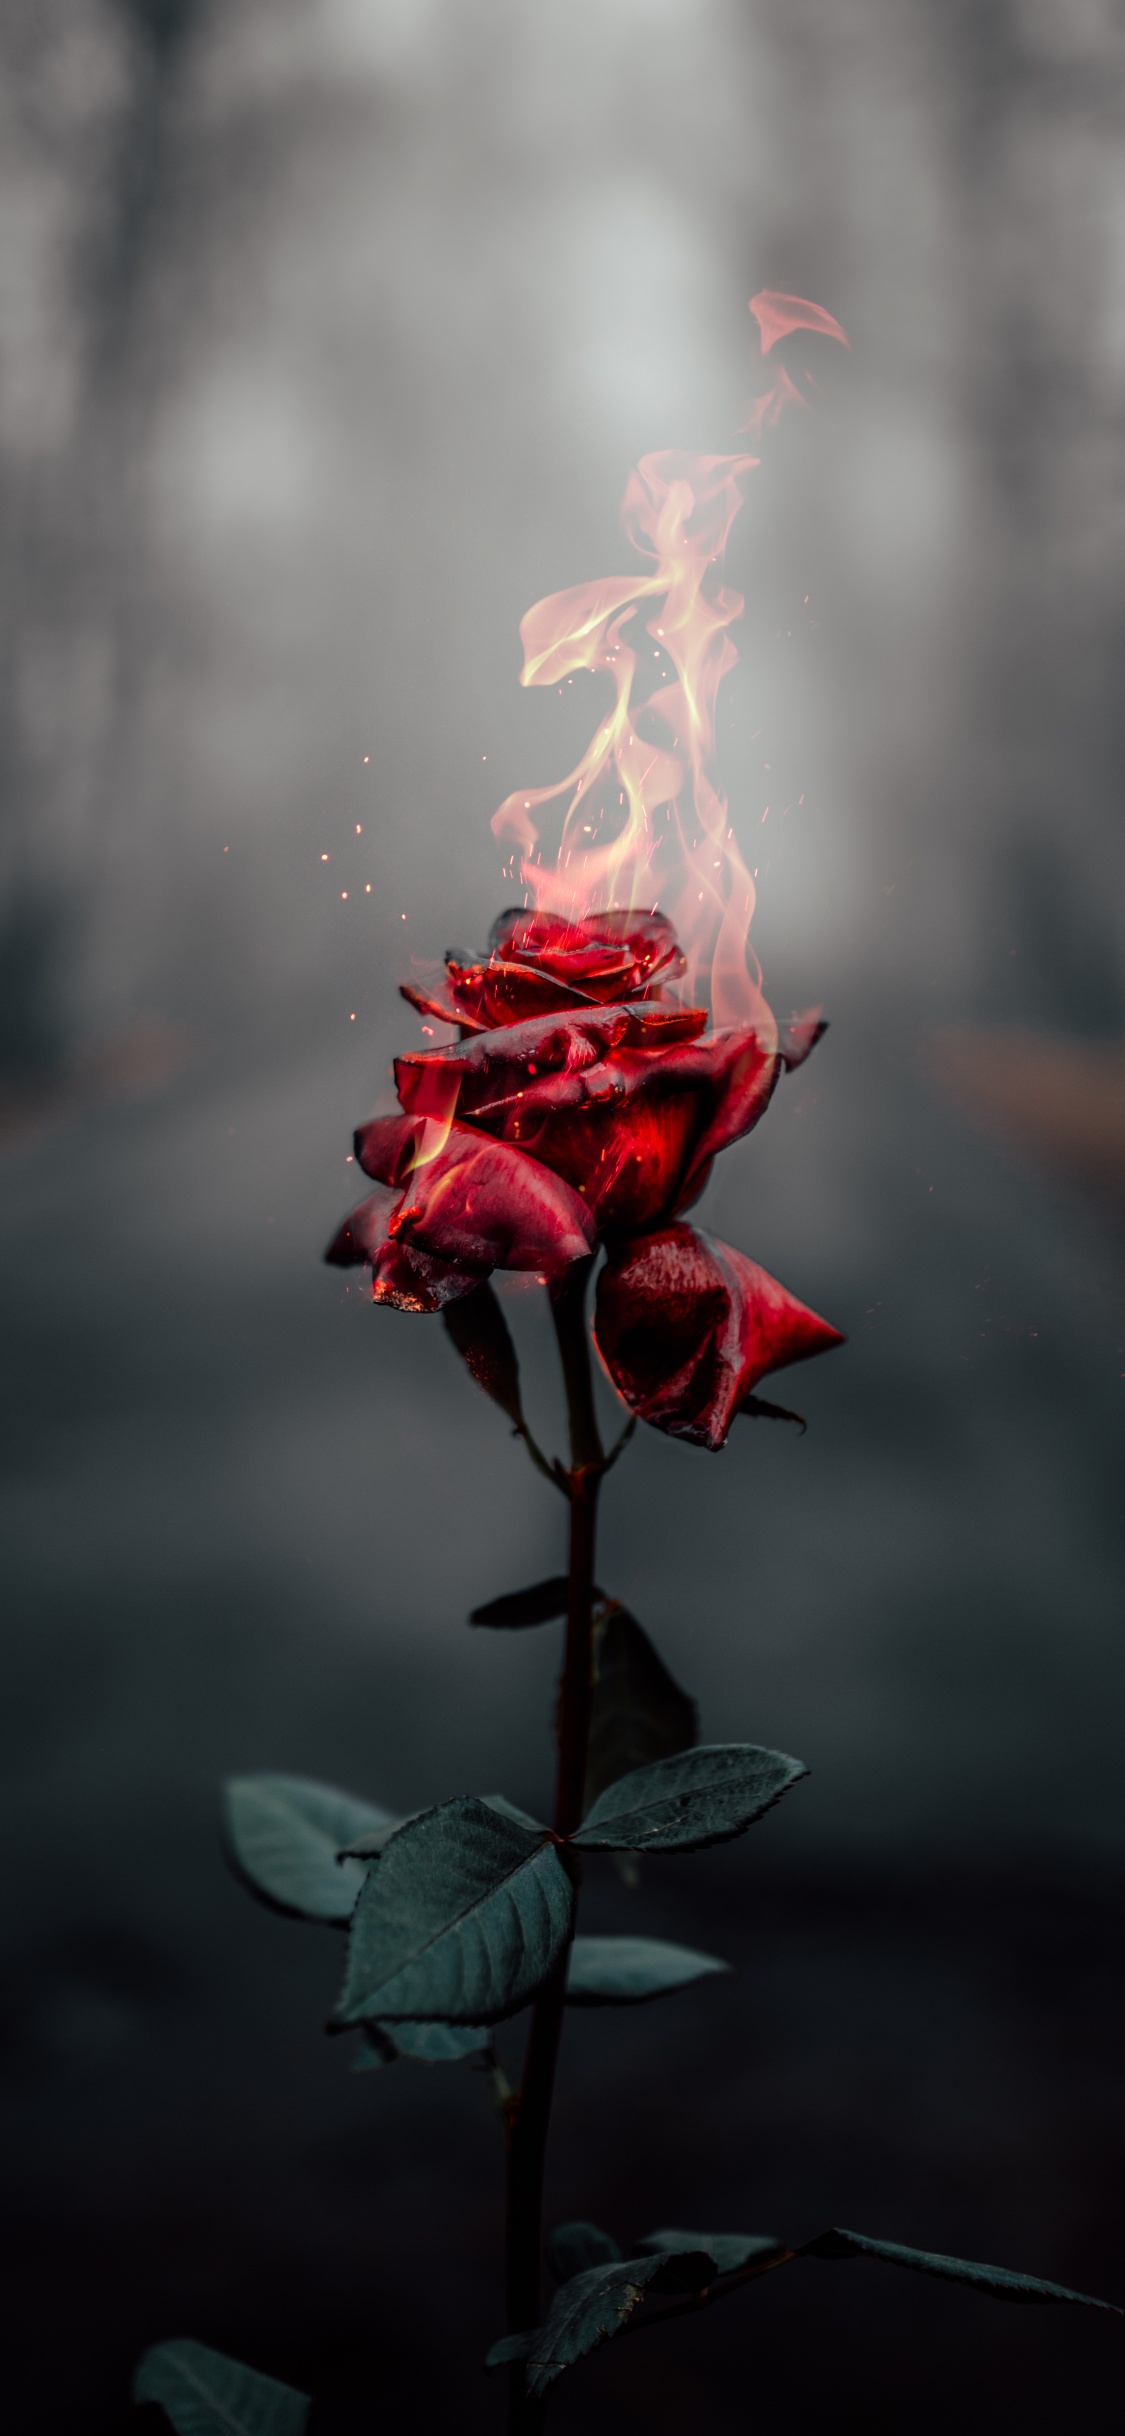 Rose flower Wallpaper 4K, Fire, Burning, Dark, Flowers, #464